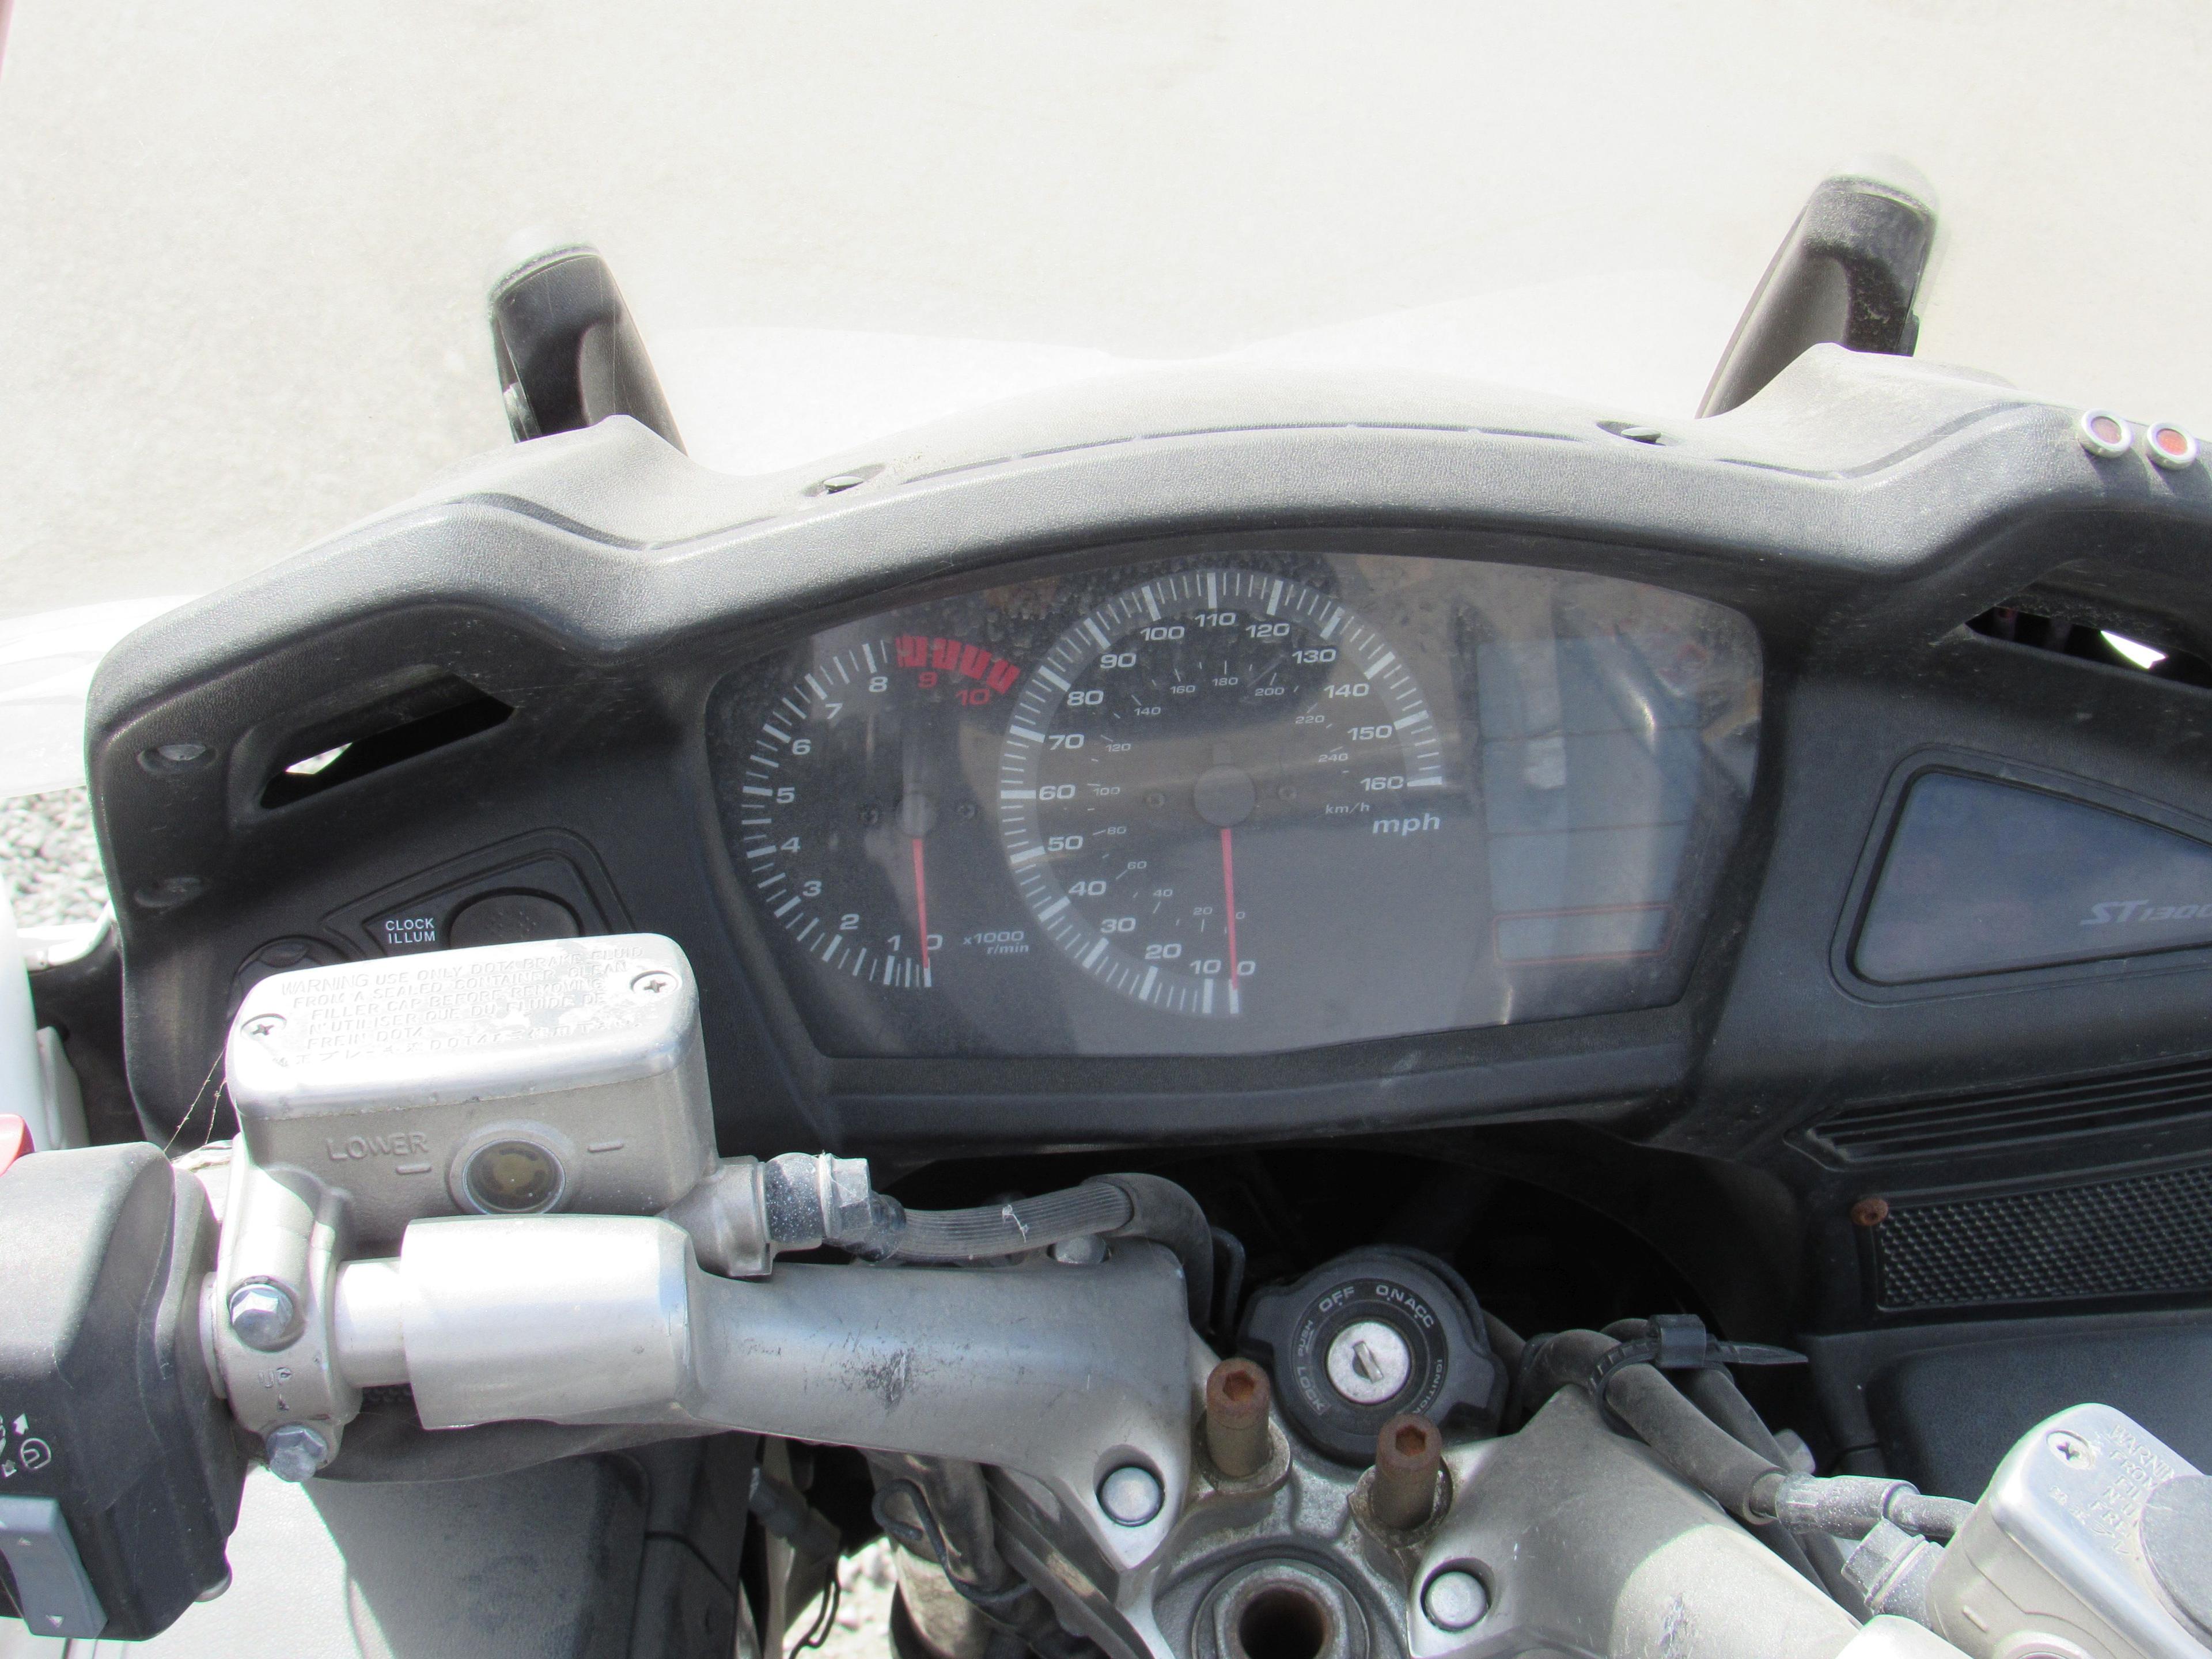 2009 HONDA ST 1300 MOTORCYCLE (NO KEY)